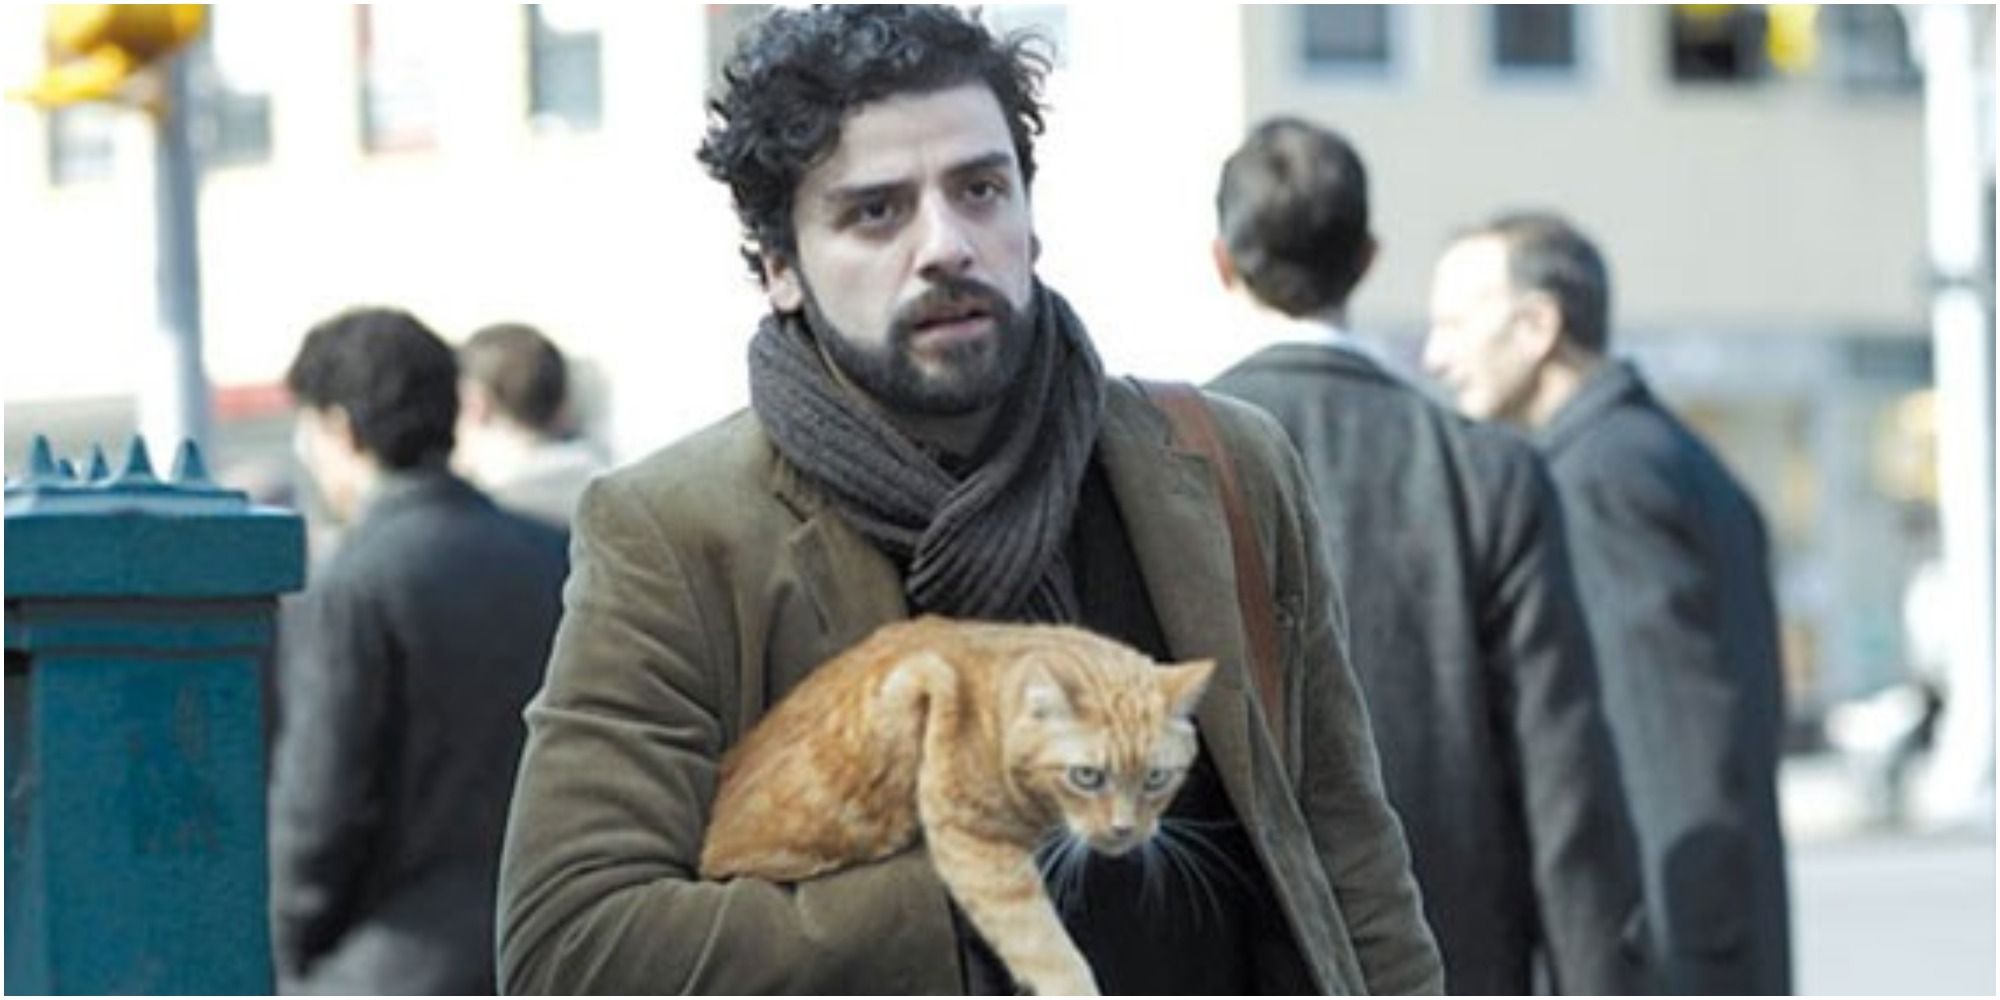 Llewyn carries Ulysses the cat through the street in Inside Llewyn Davis